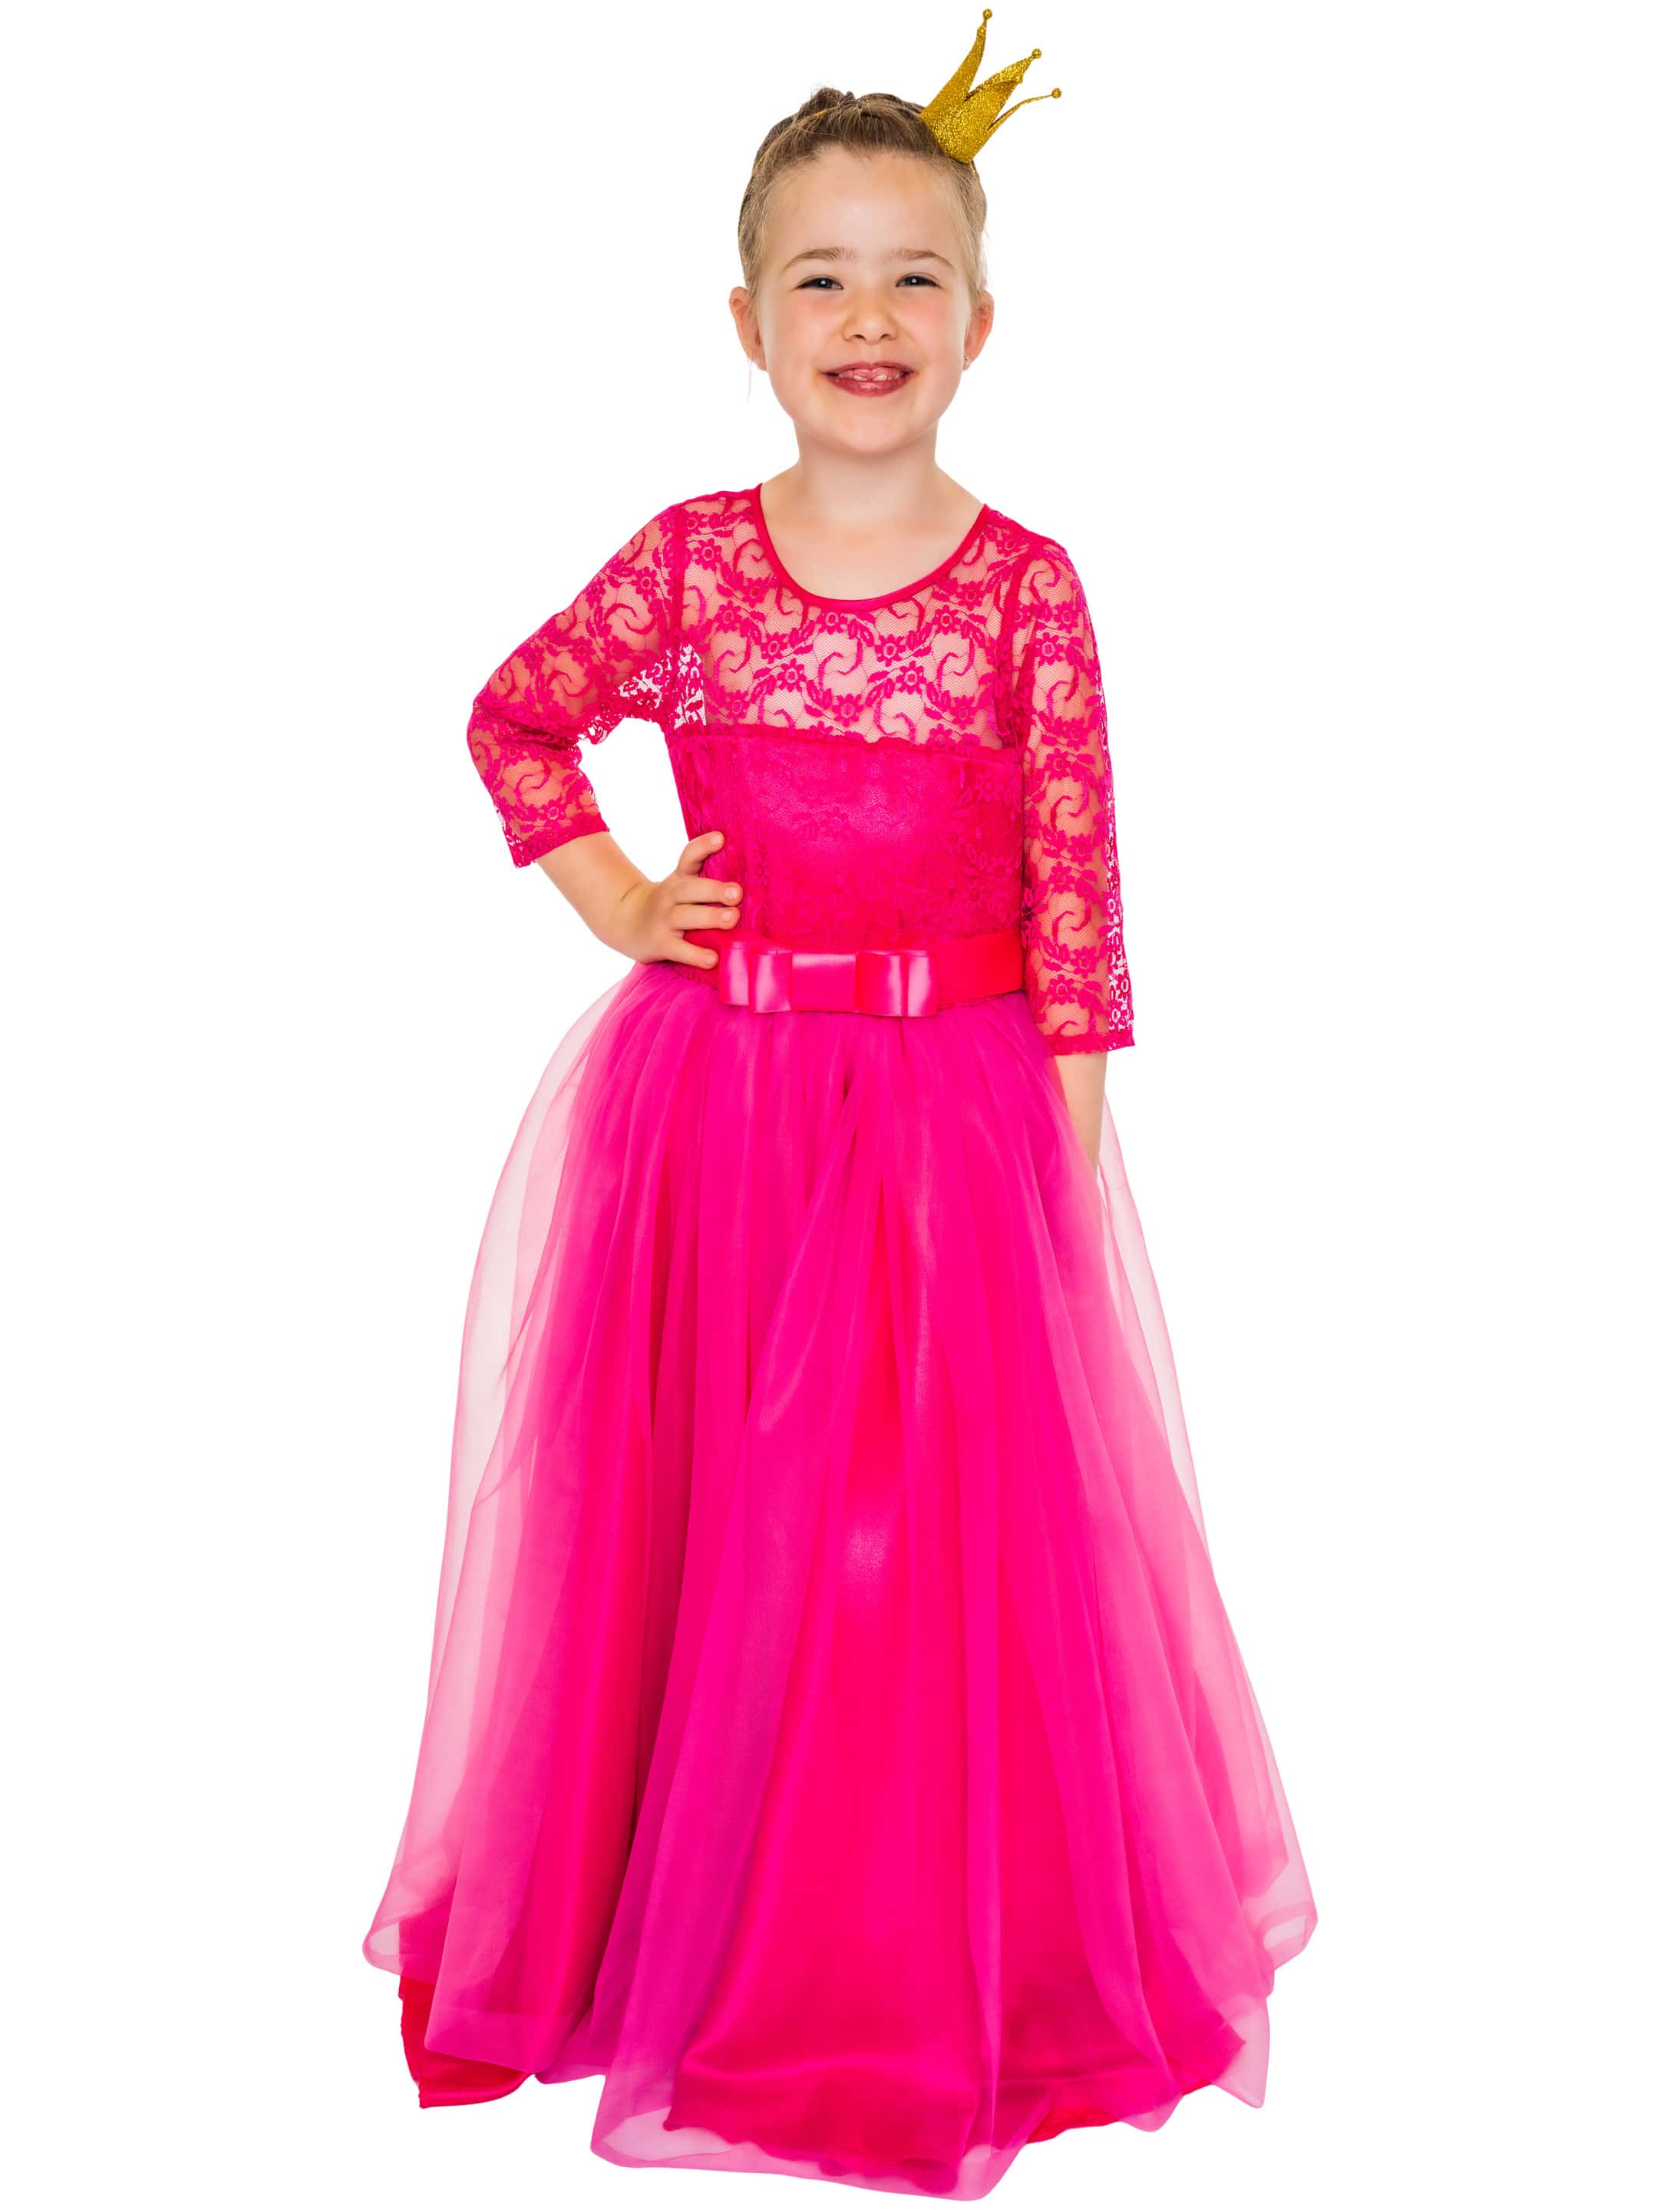 Kleid mit Spitze und | Tüll 0019870-005-089 Kinder 104 pink